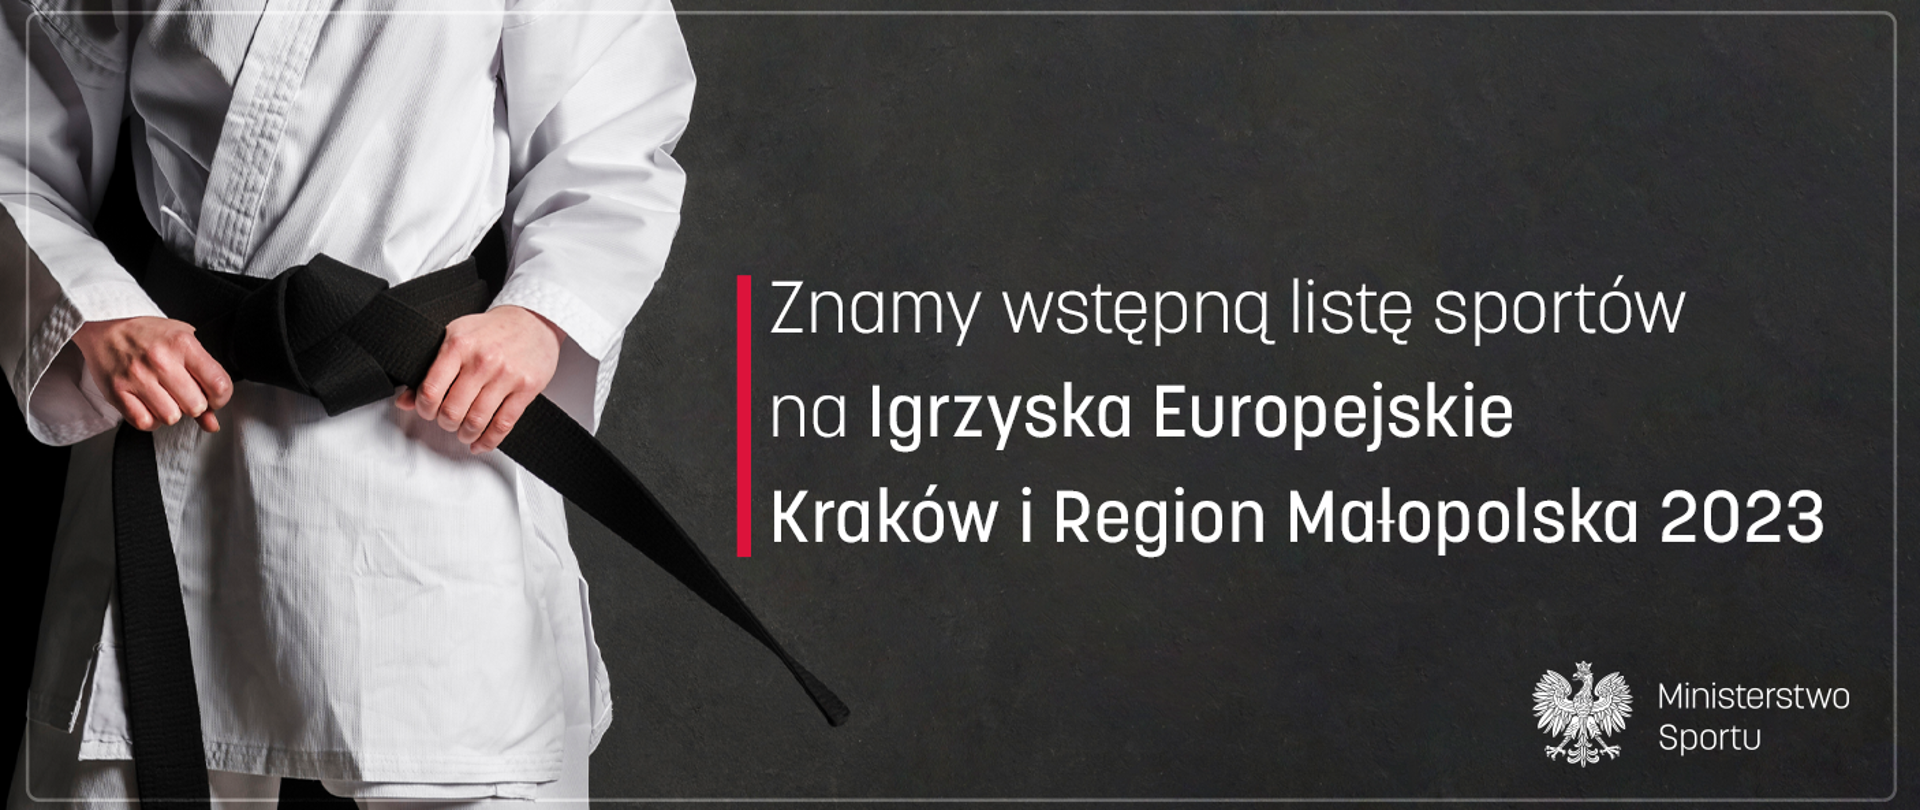 Grafika. Napis: Znamy wstępną listę sportów na Igrzyska Europejskie Kraków i Region Małopolska 2023